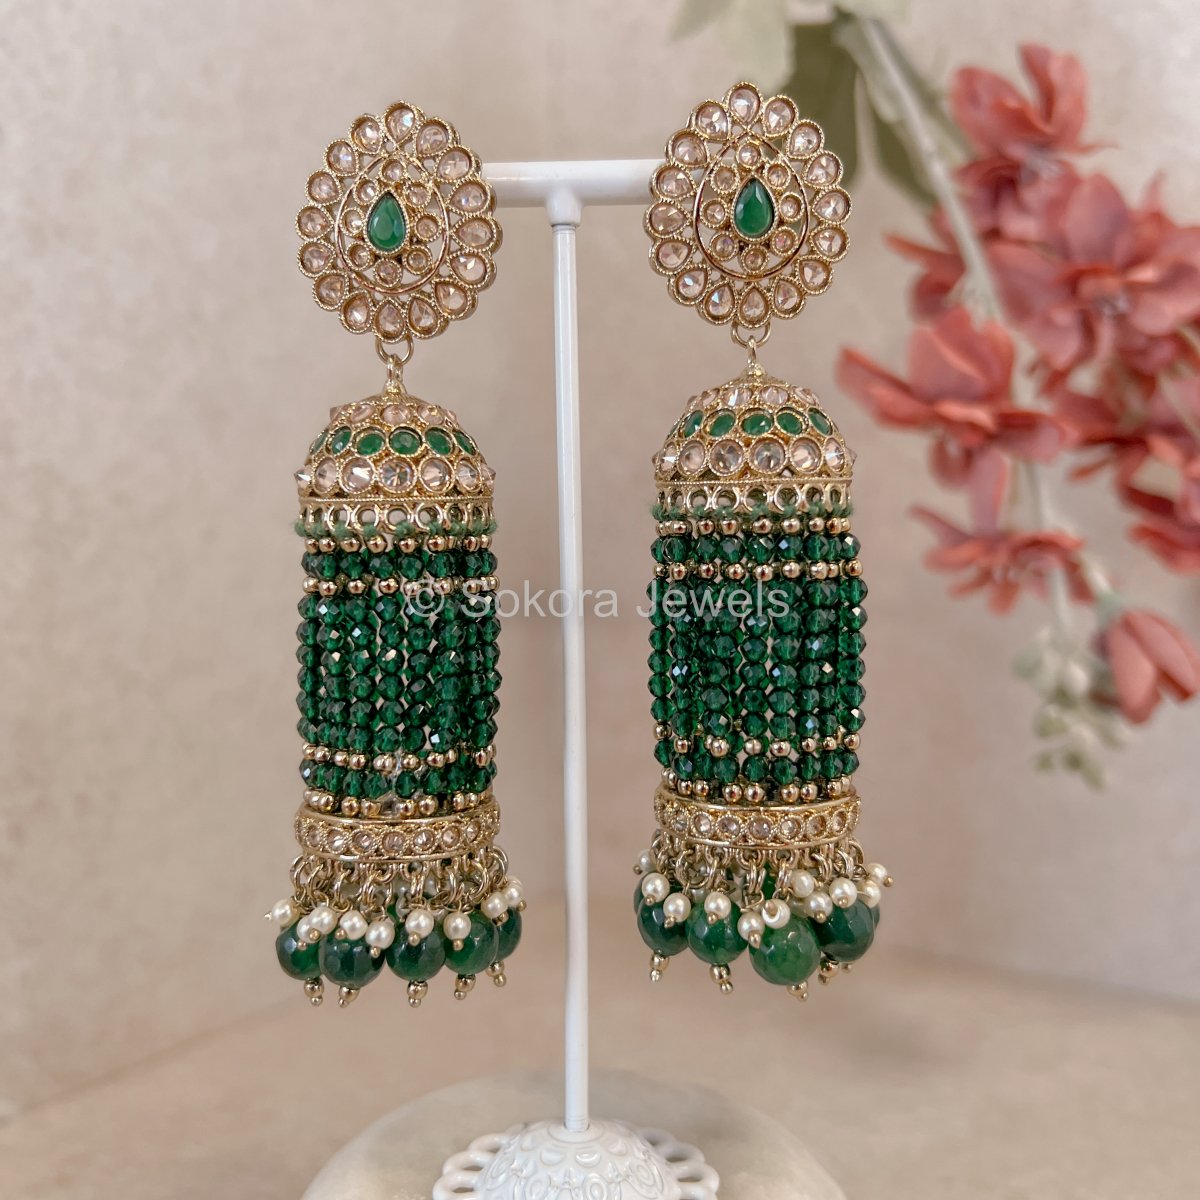 Long Green Jhumka Earrings - SOKORA JEWELSLong Green Jhumka Earrings